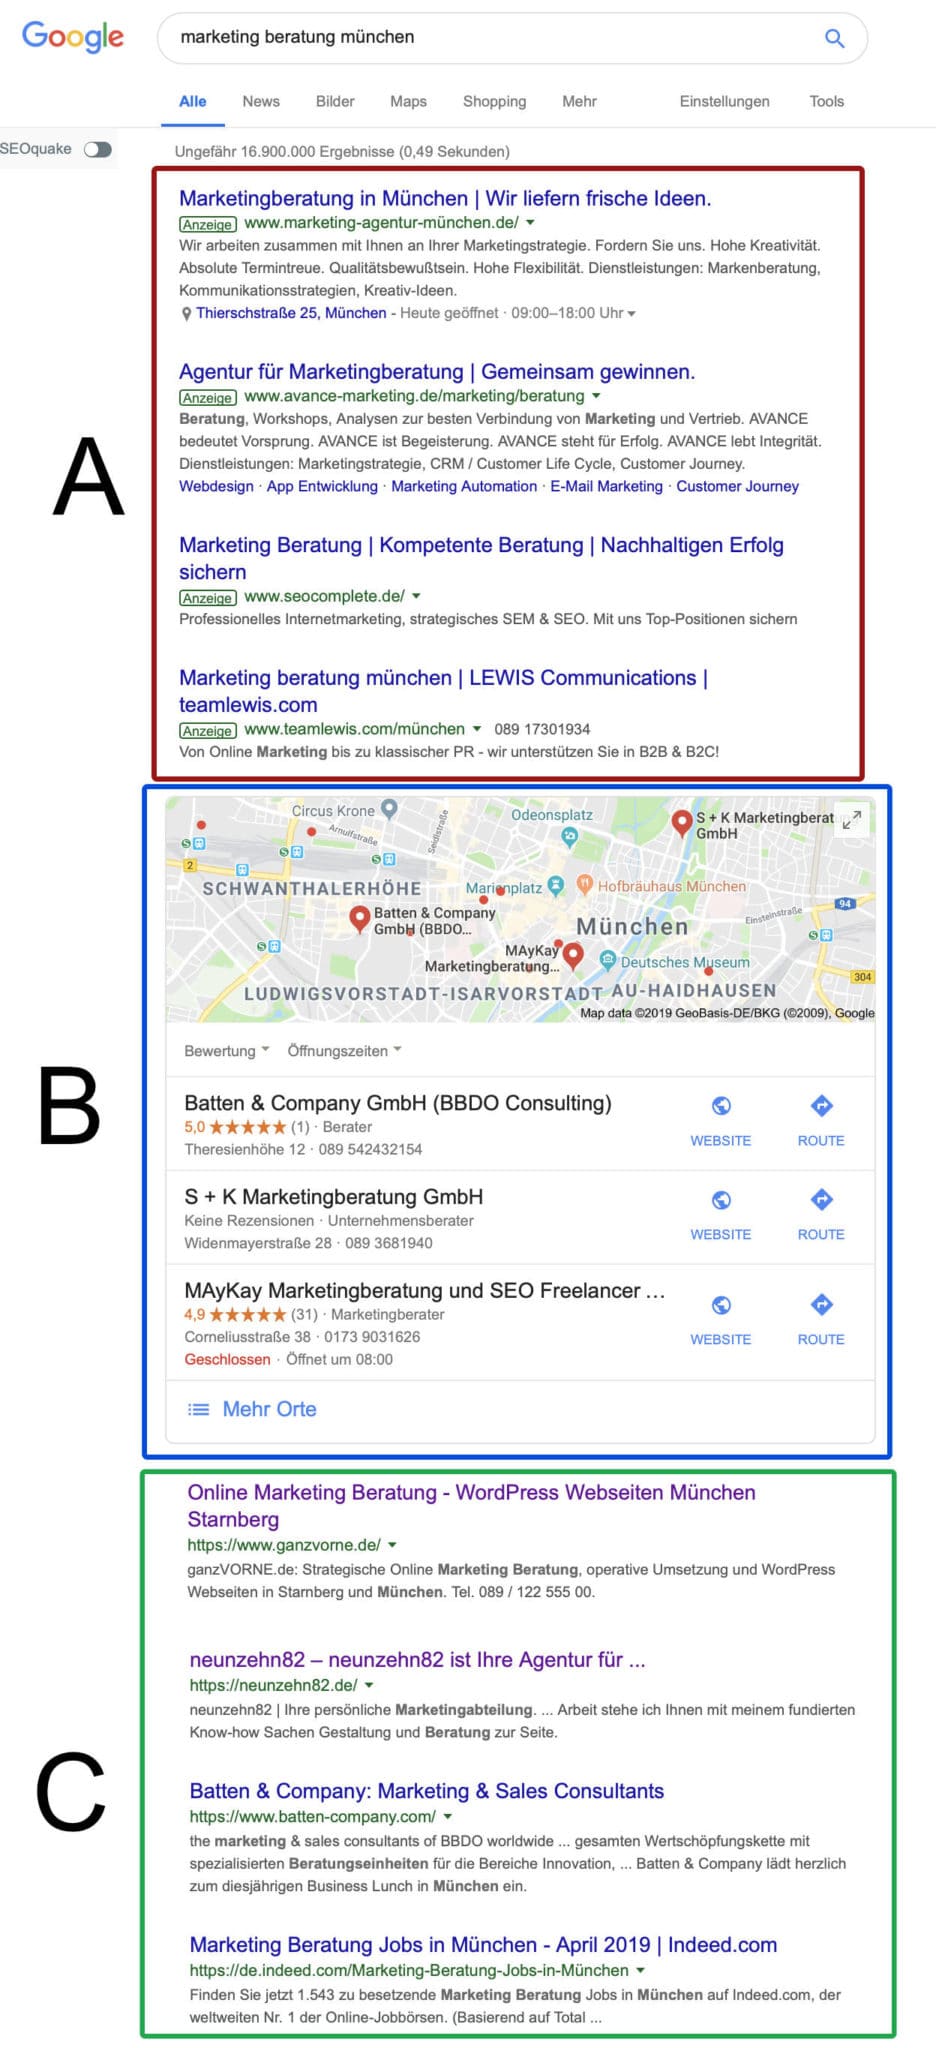 Bildschirmfoto SEM Google Suchmaschinen-Werbung Beispiel - Online Marketing Beratung und Webseiten München und Starnberg - Marketing Agentur